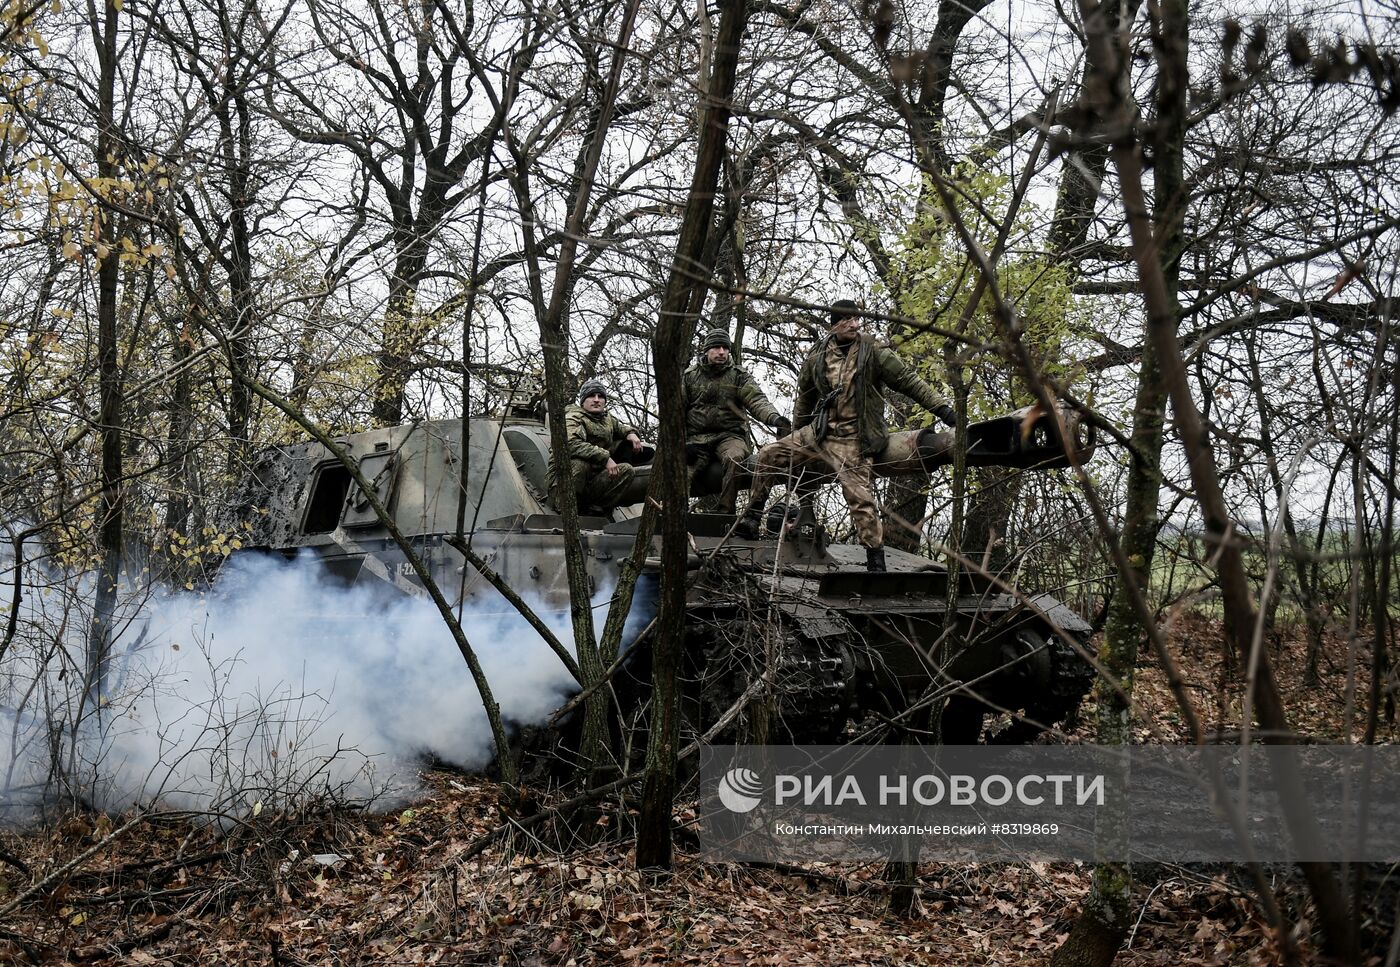 Работа расчетов артиллерийских установок "Акация" на Запорожском направлении